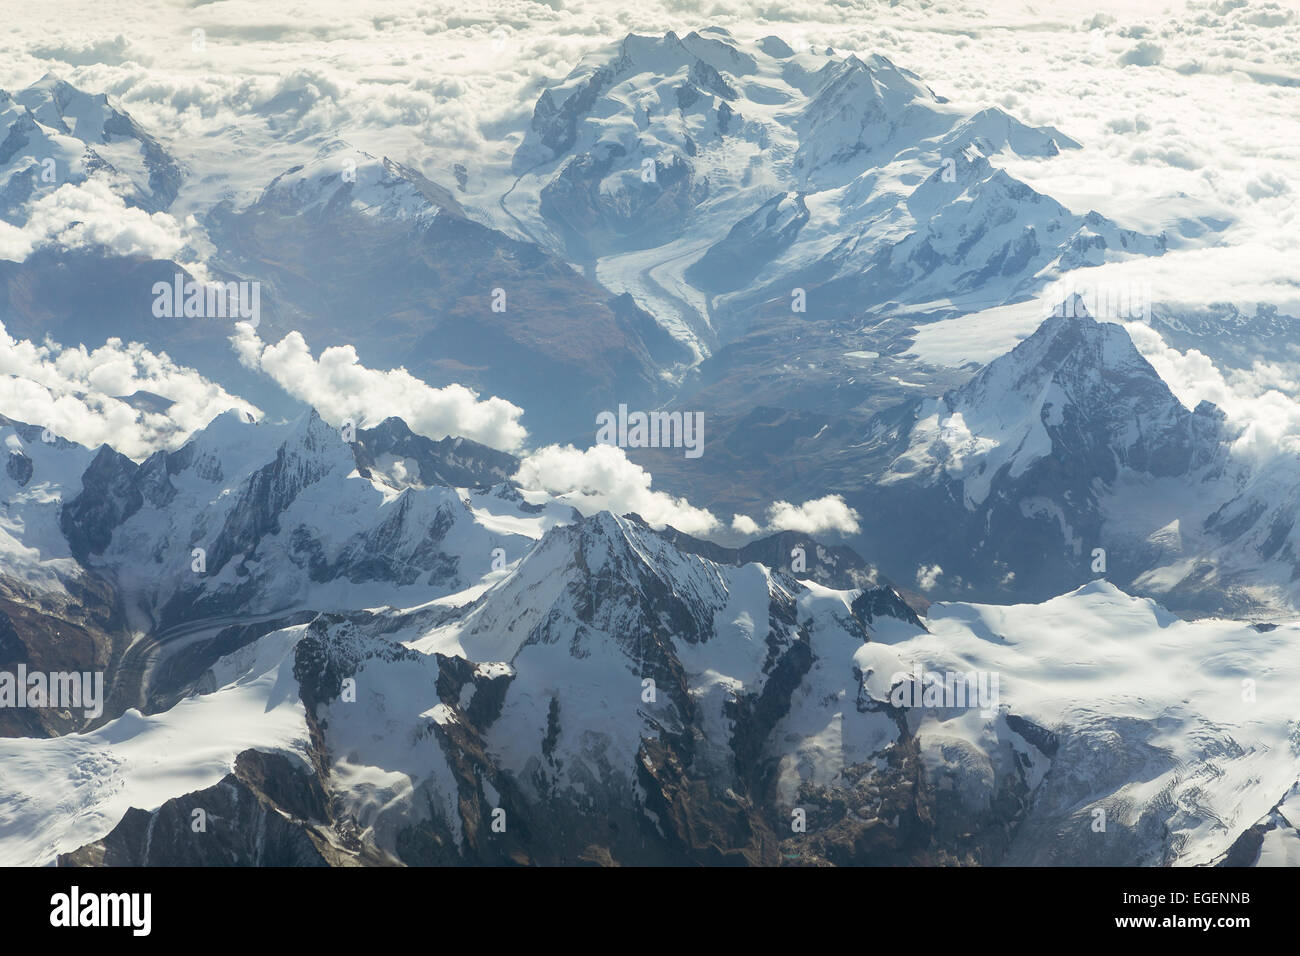 Luftaufnahme der Walliser Alpen mit den Bergen Dent Blanche, Matterhorn, den Gipfel des Monte Rosa und Gorner Dufourspitze Stockfoto